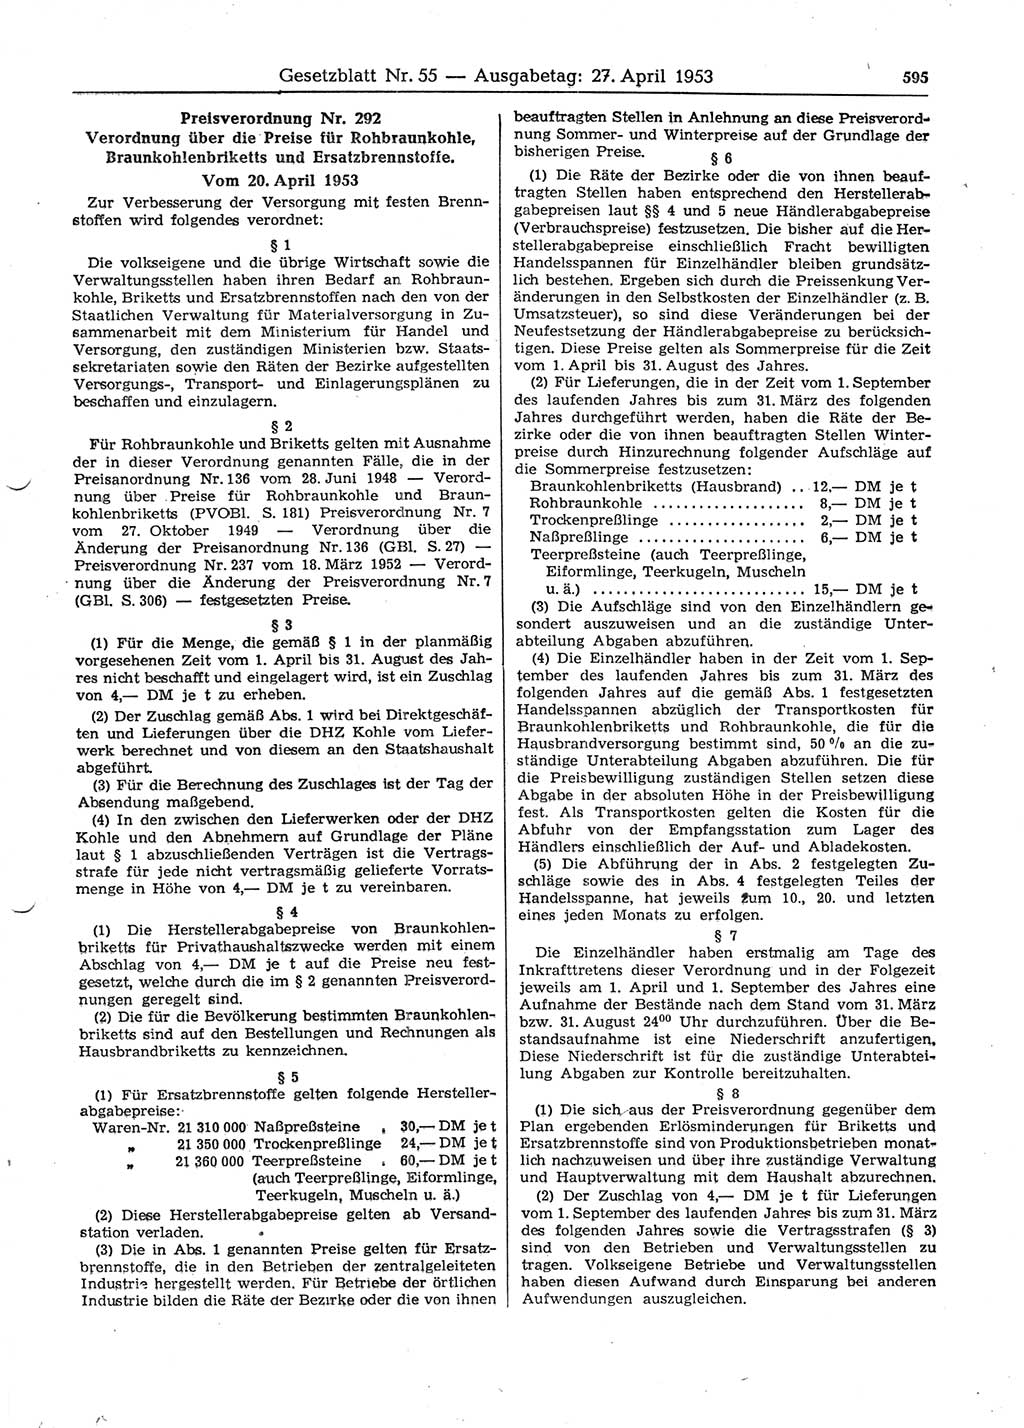 Gesetzblatt (GBl.) der Deutschen Demokratischen Republik (DDR) 1953, Seite 595 (GBl. DDR 1953, S. 595)